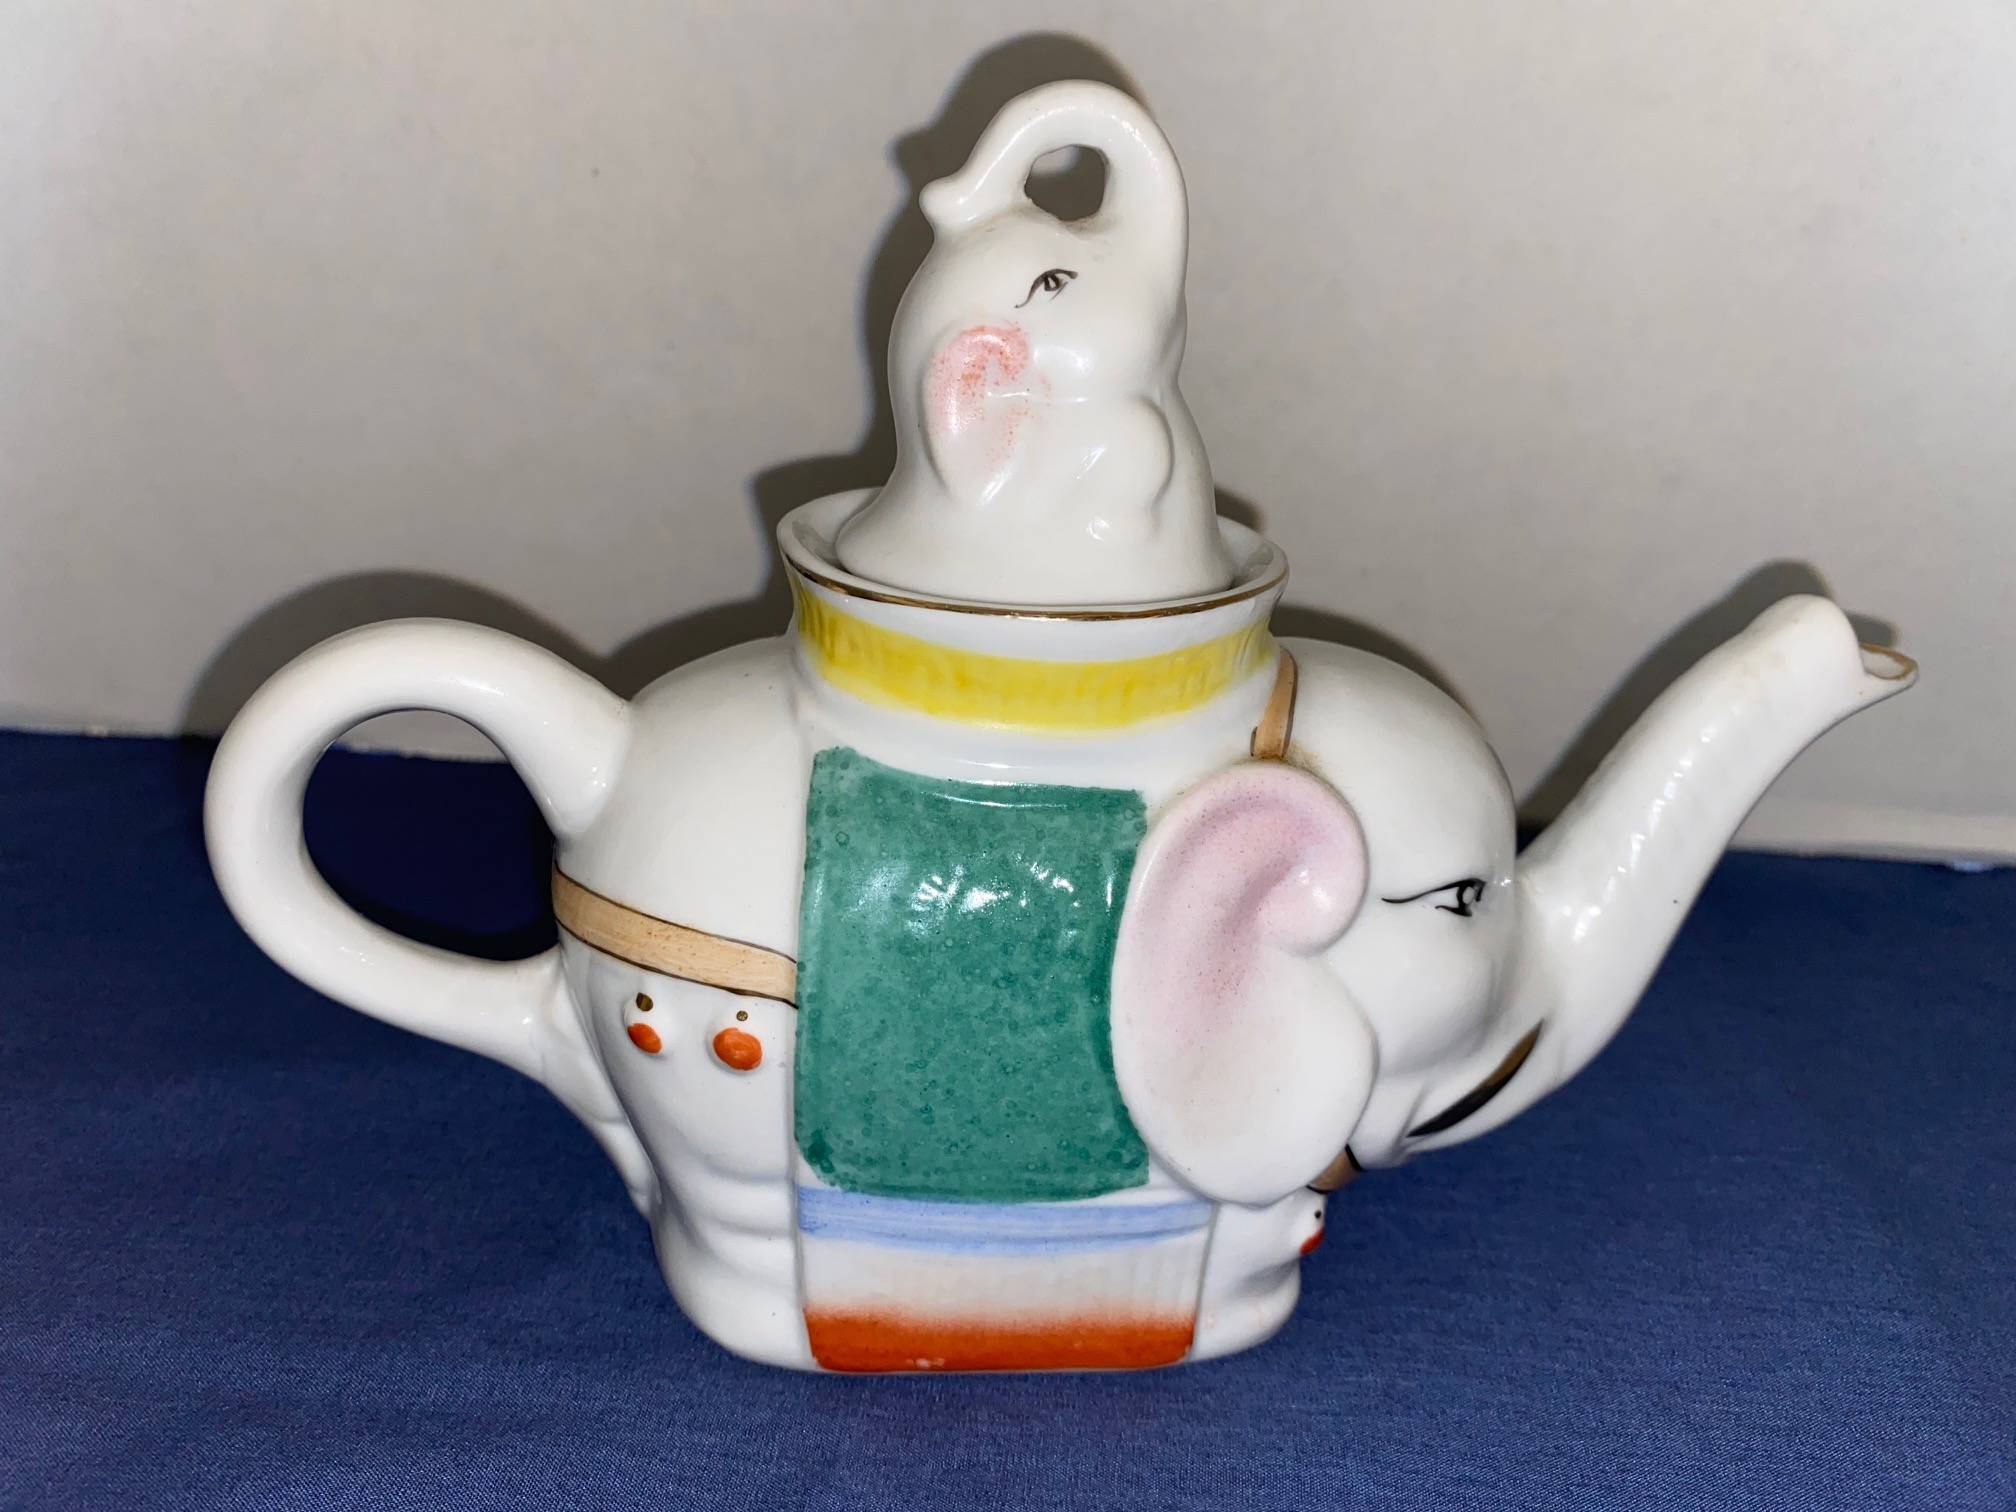 Super Cute Vintage Porcelain Single Serving Elephant Tea Pot